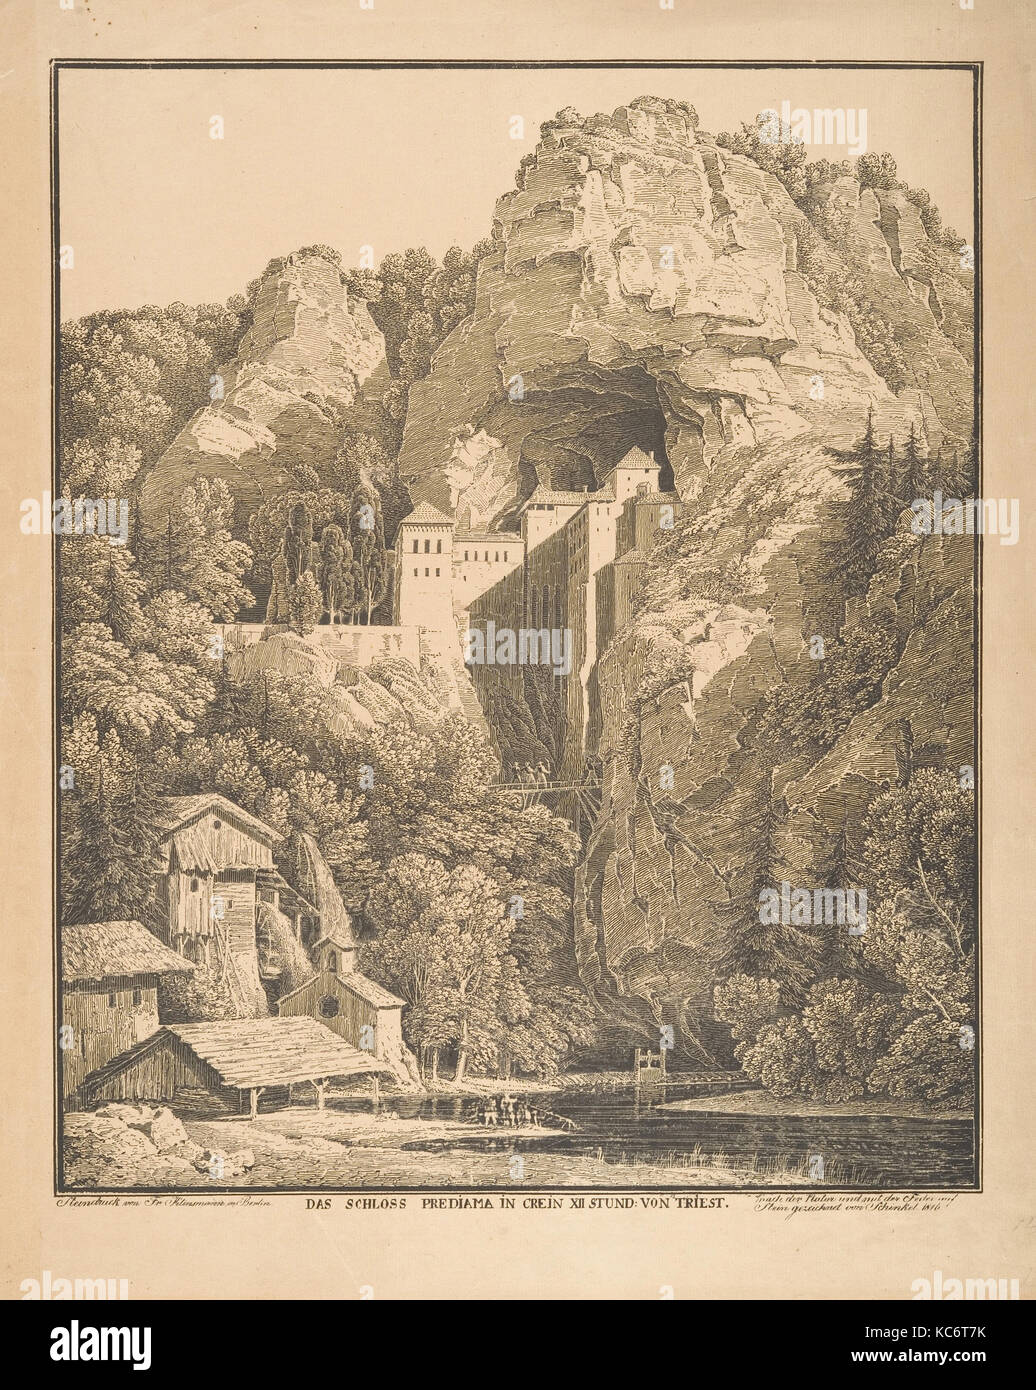 Das Schloss Prediama in Crein XII Stund: von Triest, Karl Friedrich Schinkel, 1816 Stock Photo